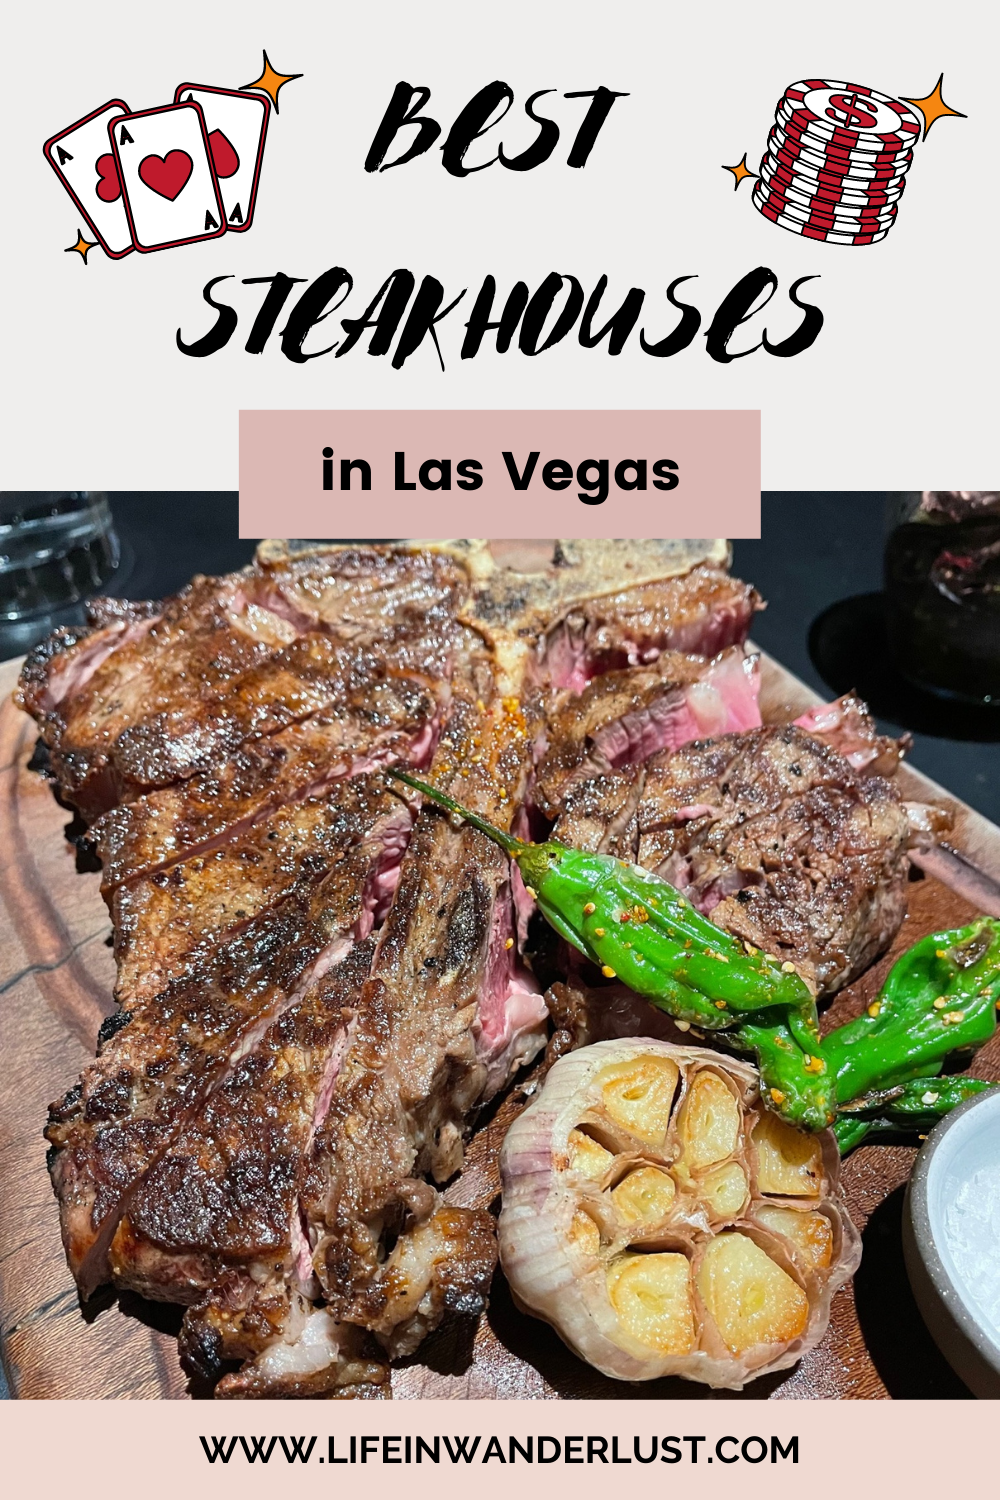 Best steakhouses in Las Vegas